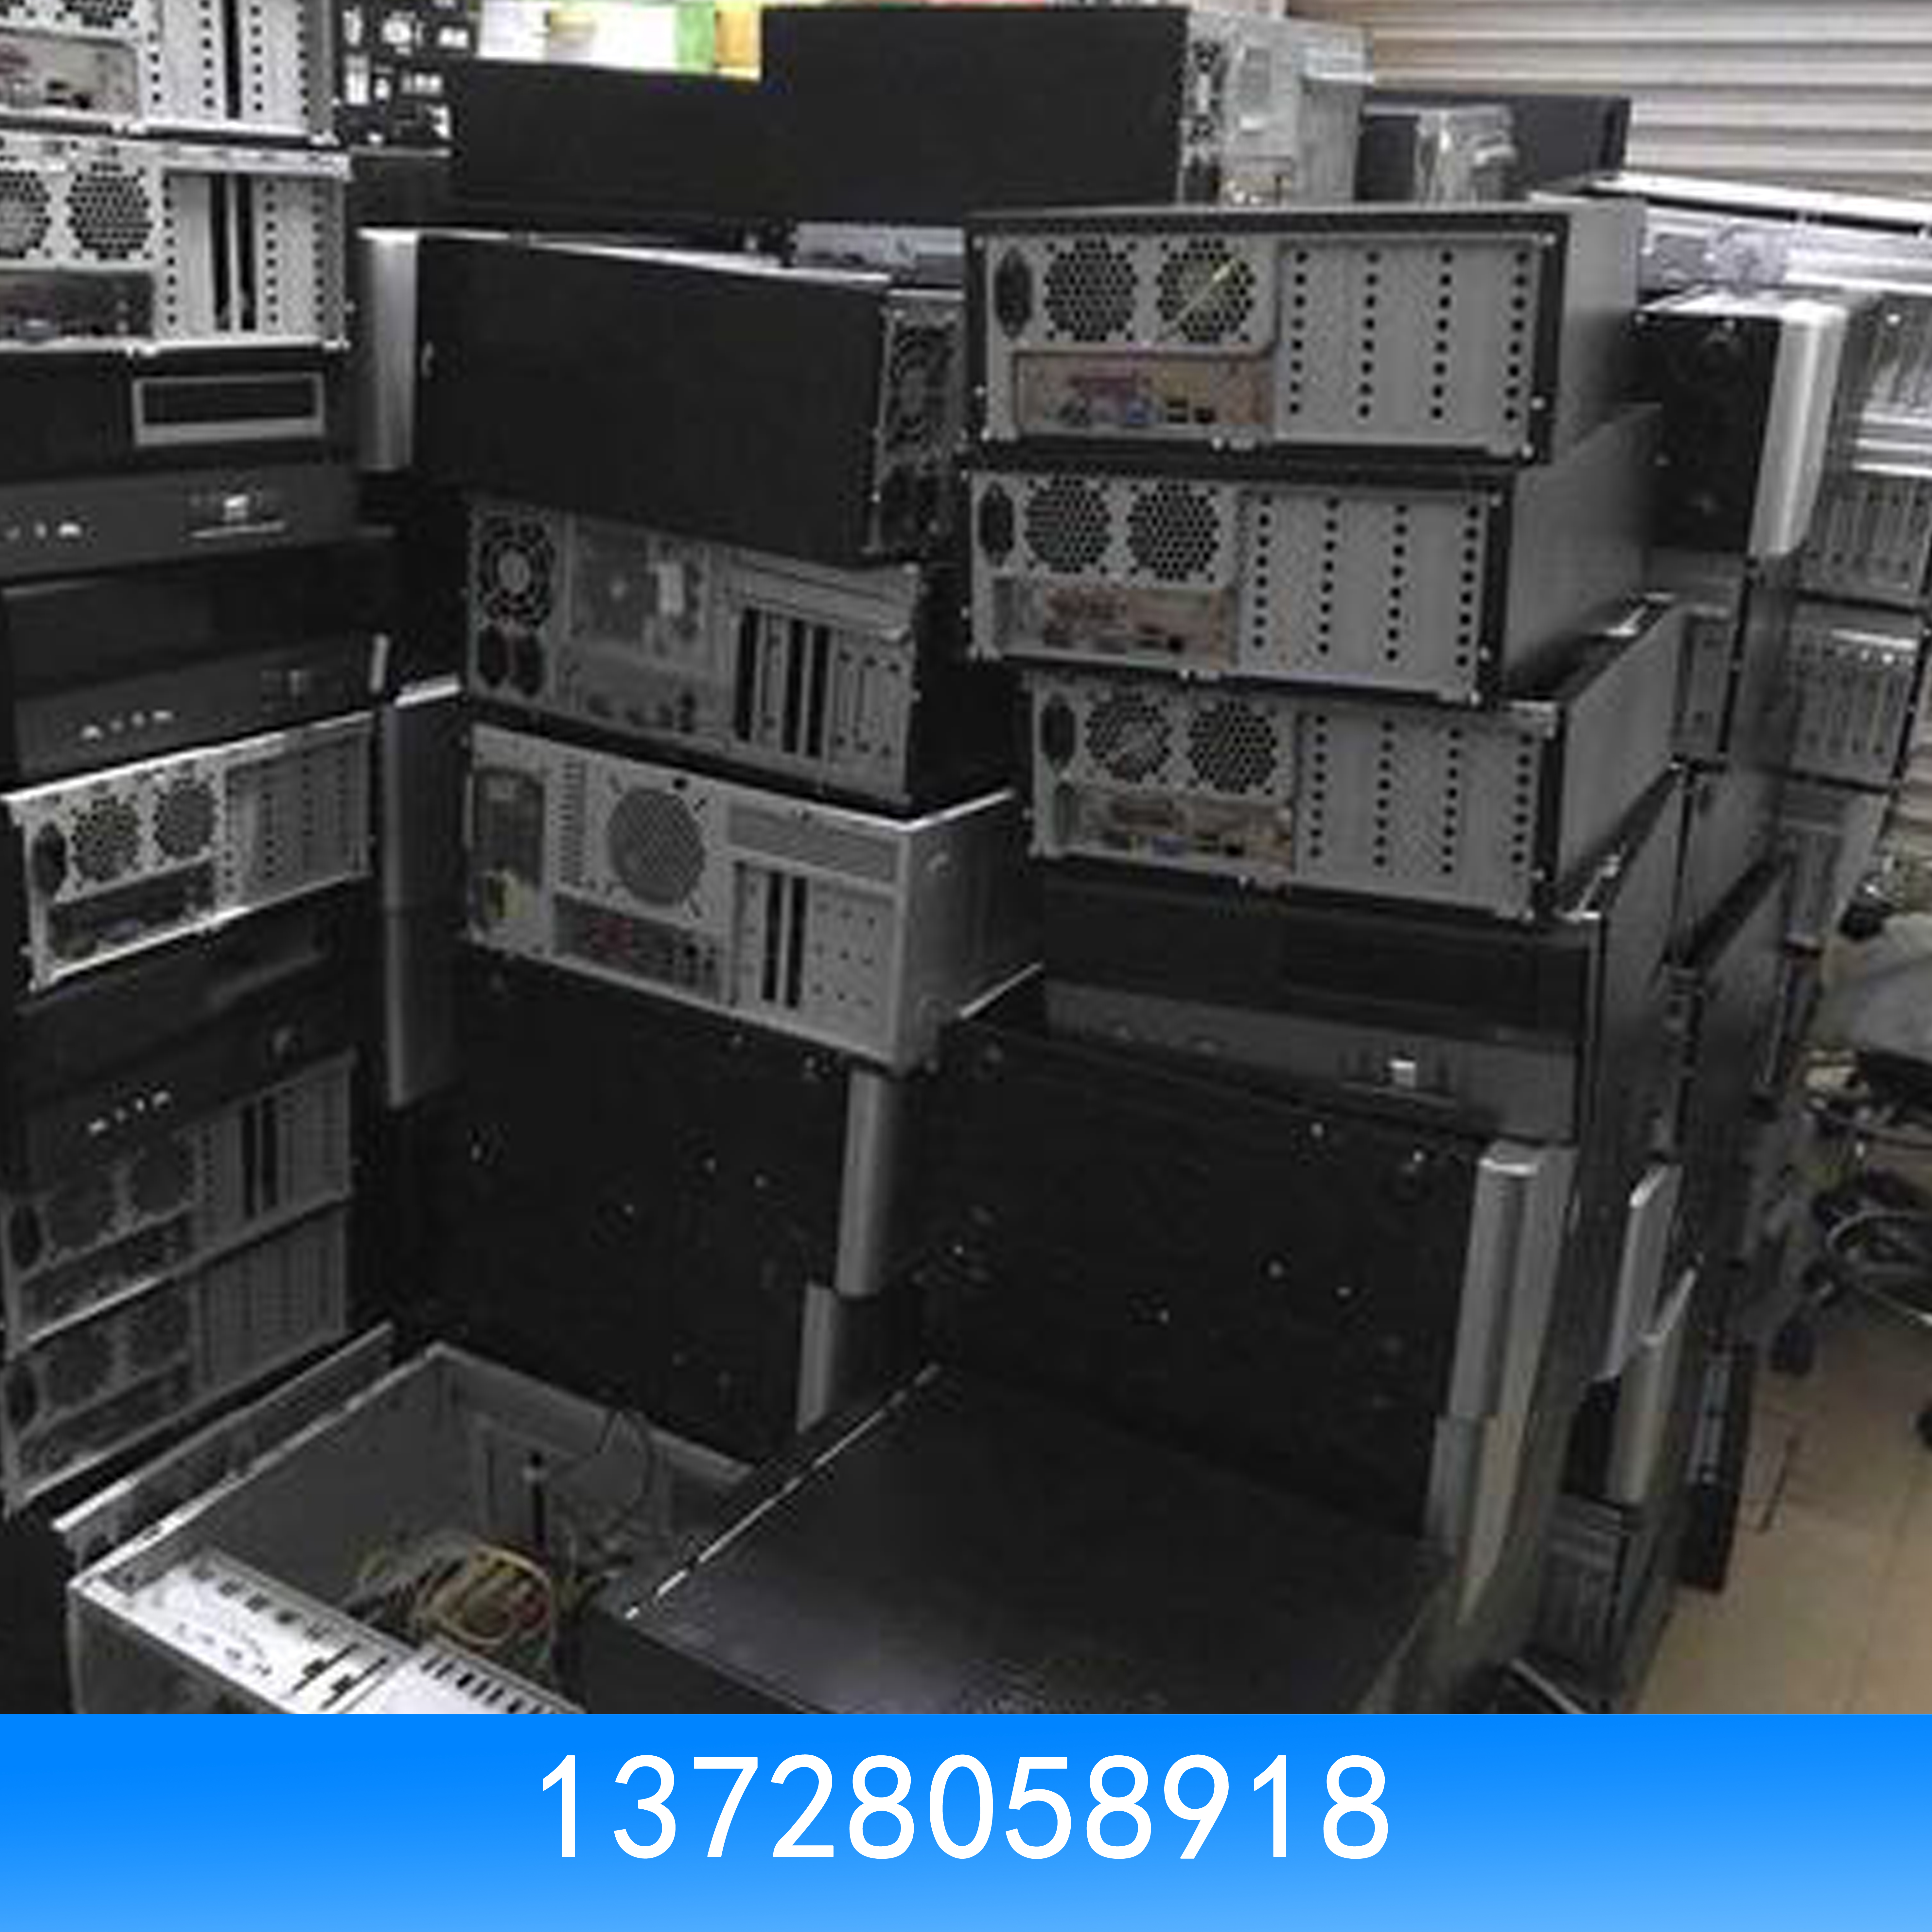 广州回收电脑 广州回收电脑价格 广州回收二手电脑图片